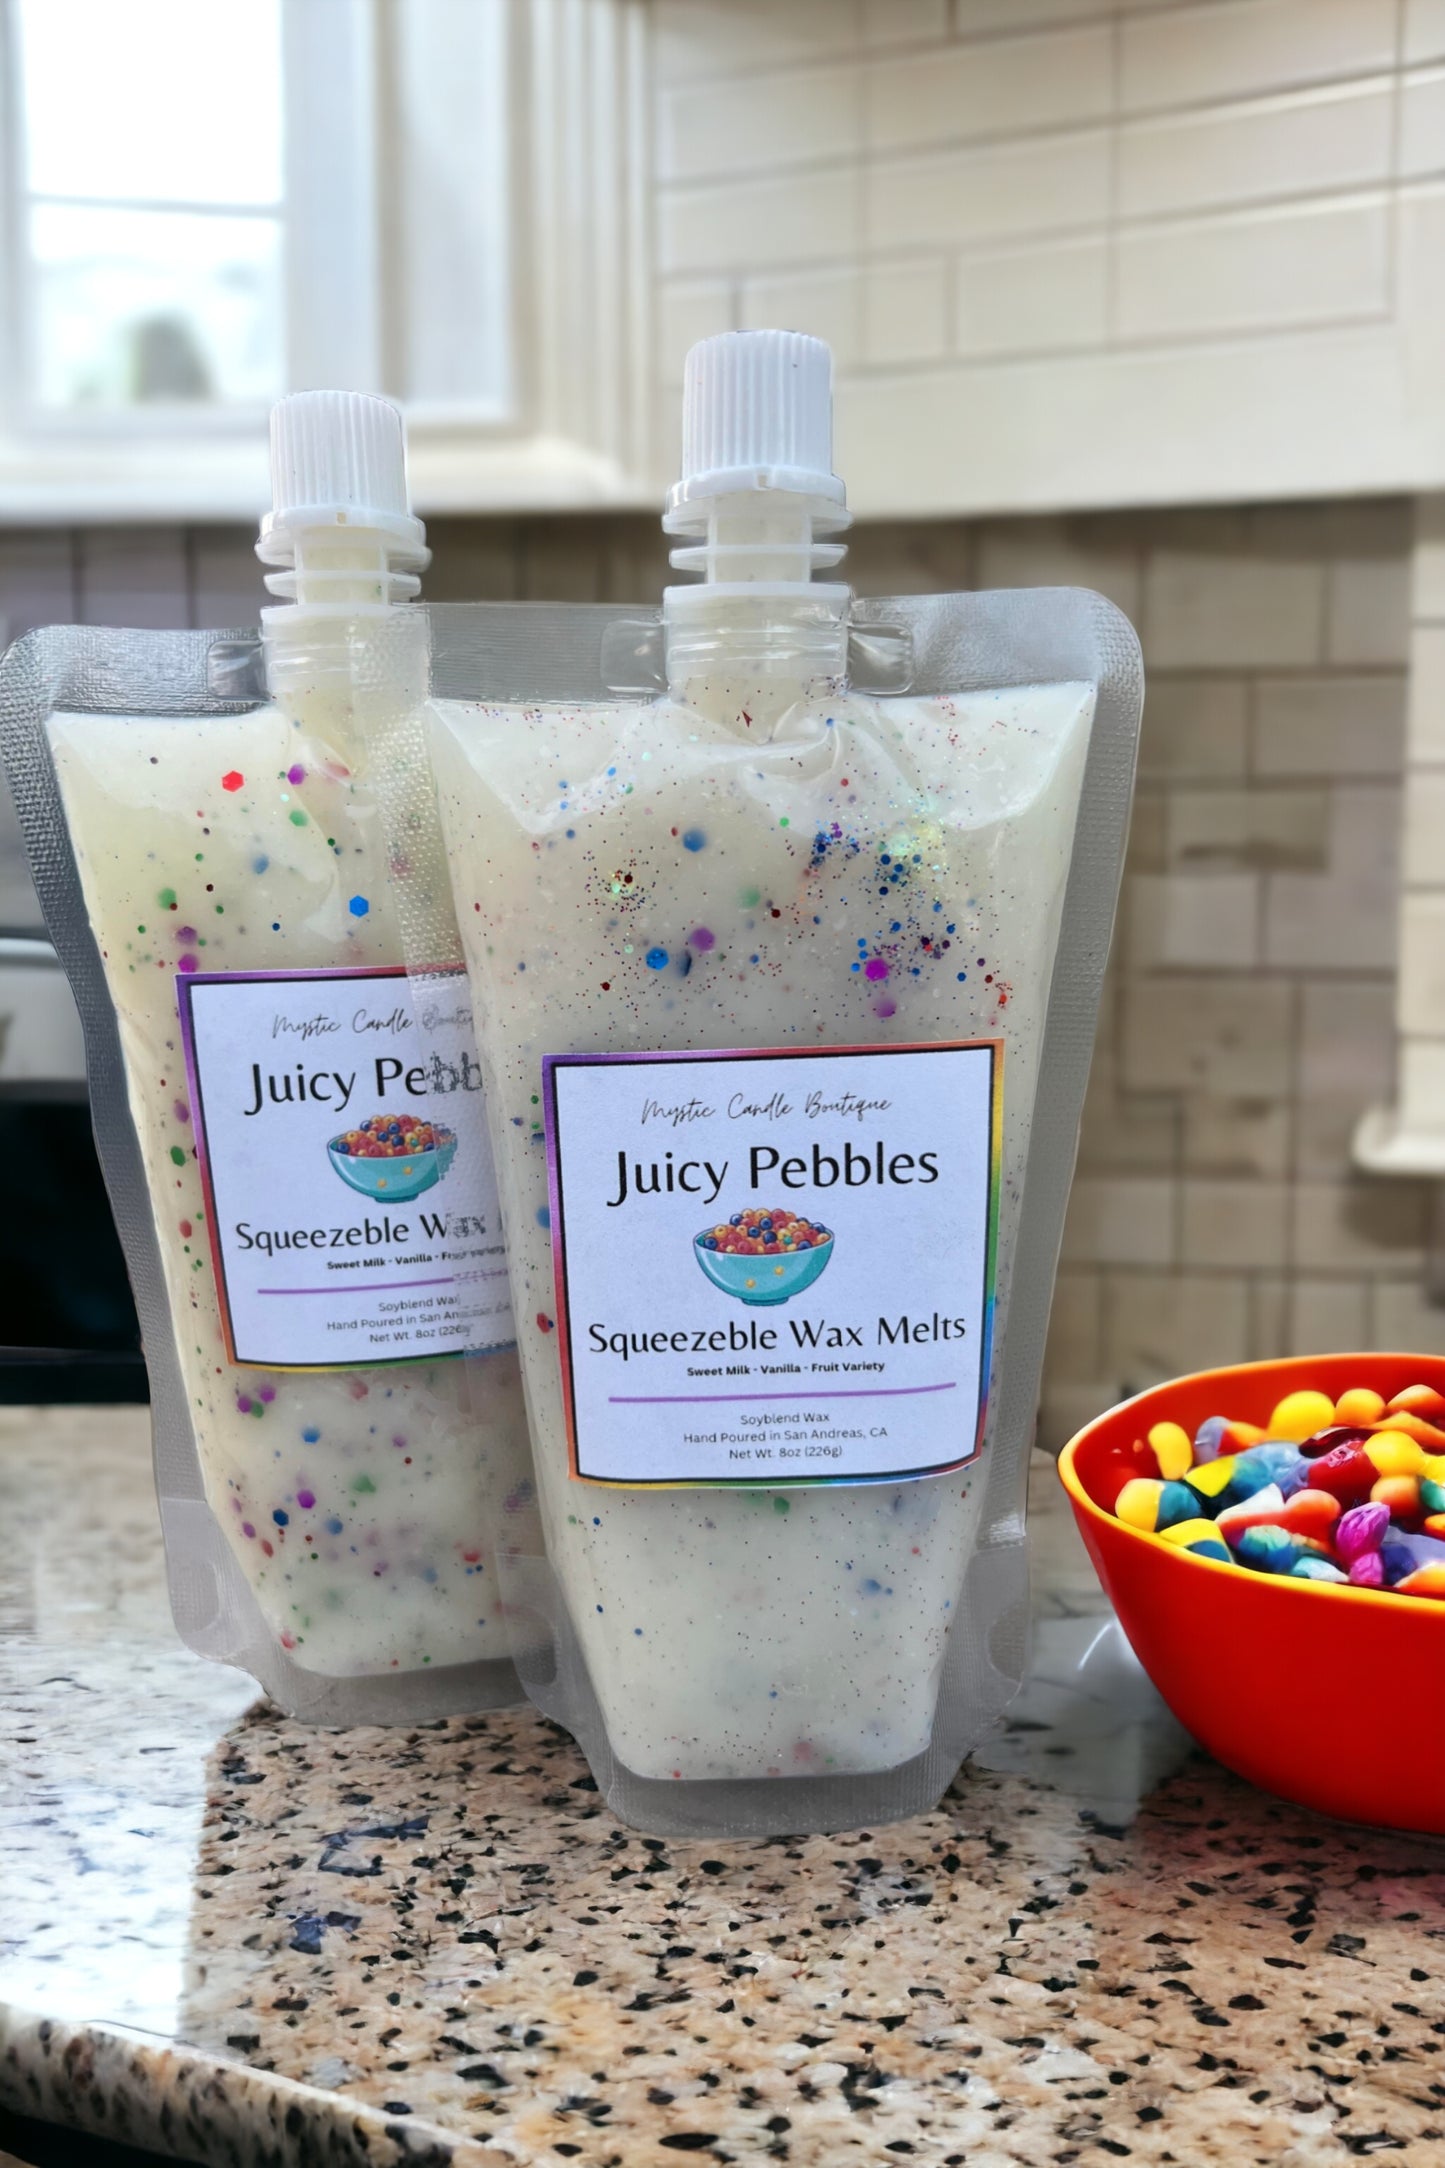 Juicy pebbles squeezable wax